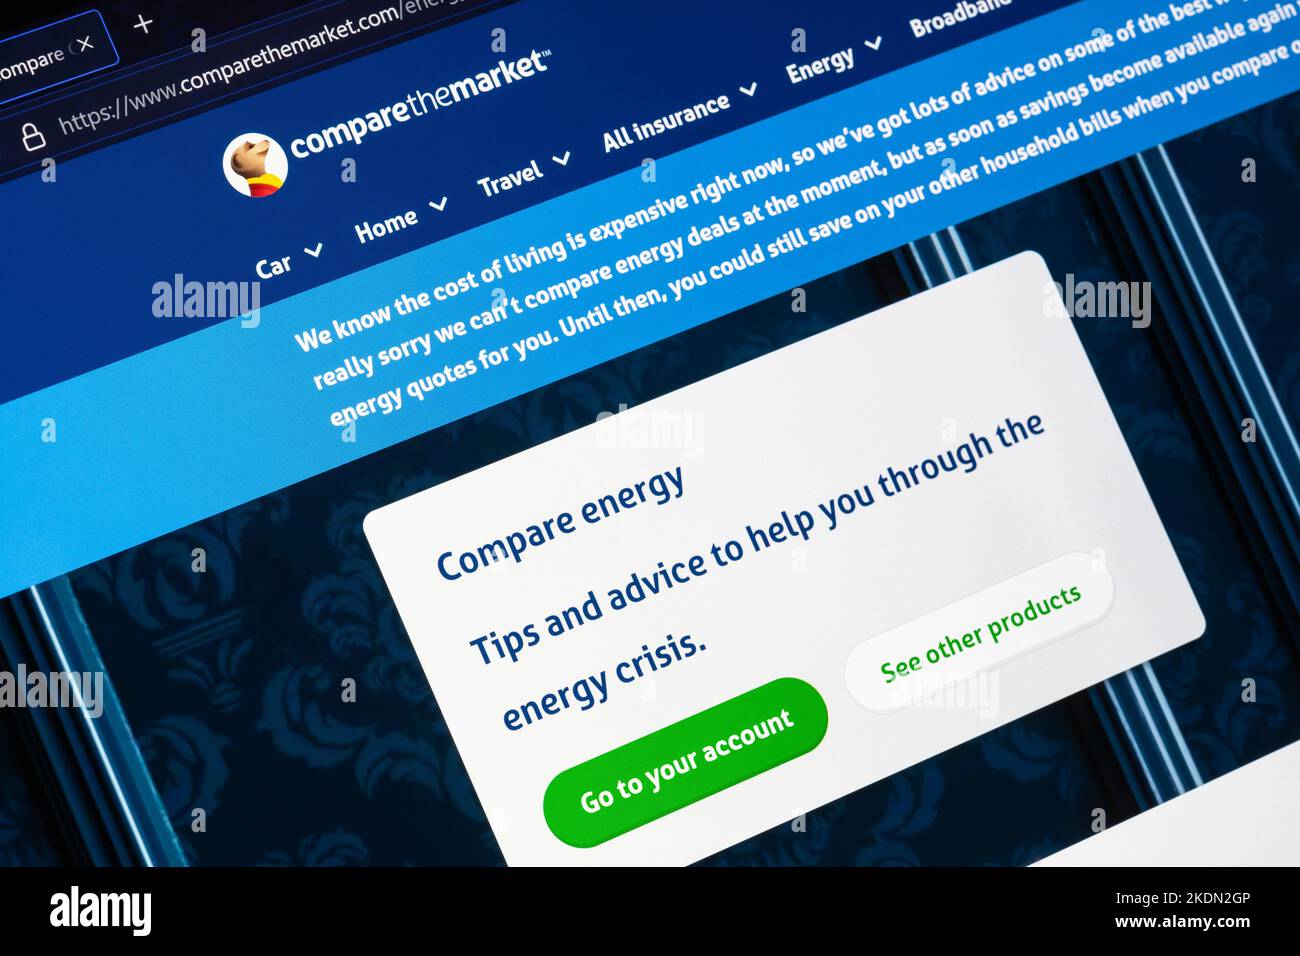 Vergleichsseite und Logo auf einem Laptop-Bildschirm - eine britische Preisvergleichsseite auf der Vergleichsseite Energie. Konzept: Energiekrise Stockfoto